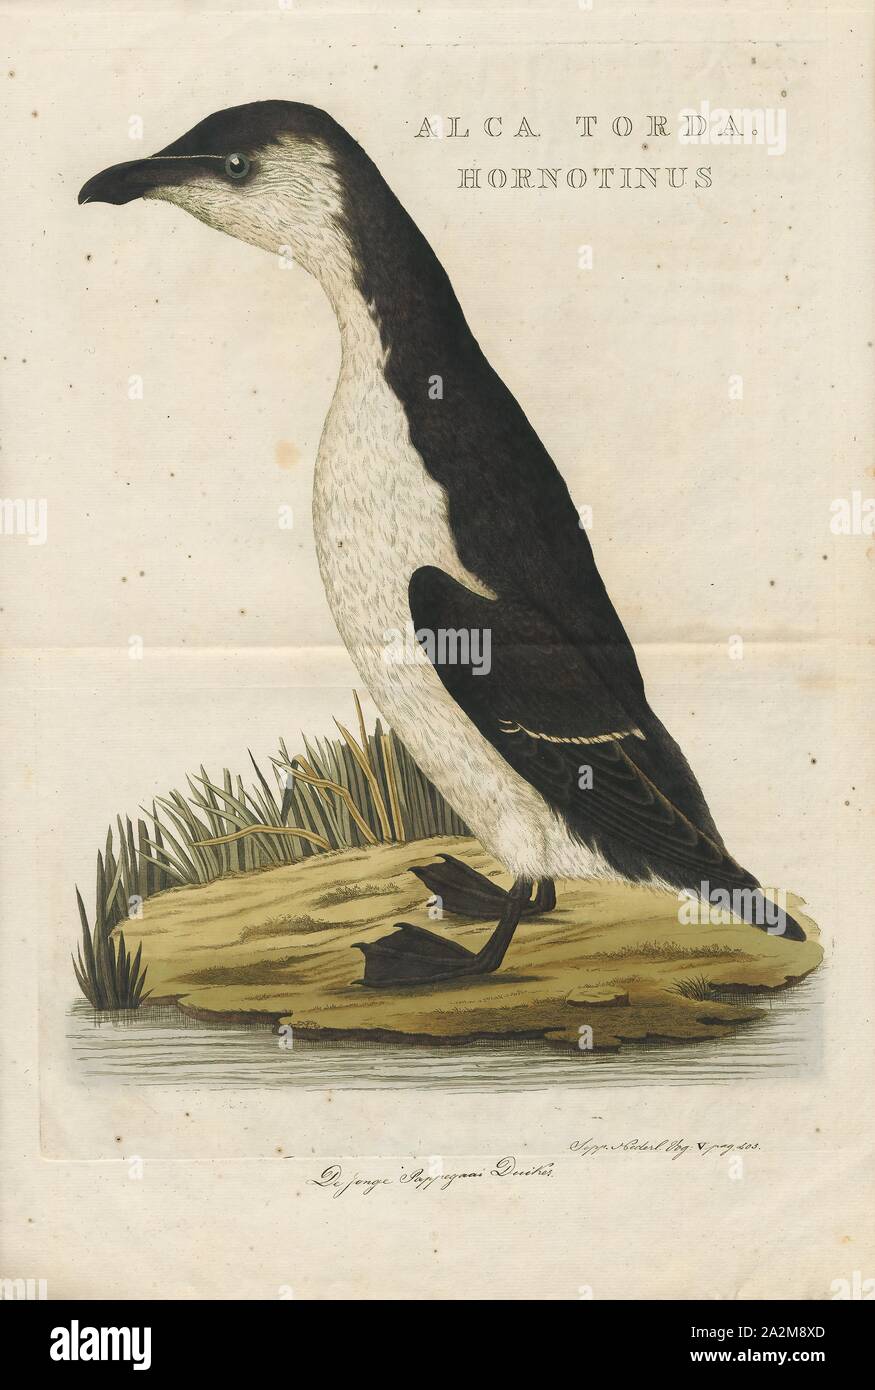 Chenalopex torda, Drucken, Riesenalk, der riesenalk (Pinguinus impennis) ist eine ausgestorbene Spezies von Flugunfähigen alcid, die in der Mitte des 19. Jahrhunderts ausgestorben. Es war das einzige moderne Arten in der Gattung Pinguinus. Es ist nicht eng mit dem Vögel jetzt bekannt als Pinguine, die entdeckt wurden später und so von den Seeleuten genannt, weil der physischen Ähnlichkeit zu den Riesenalk., 1770-1829 Stockfoto